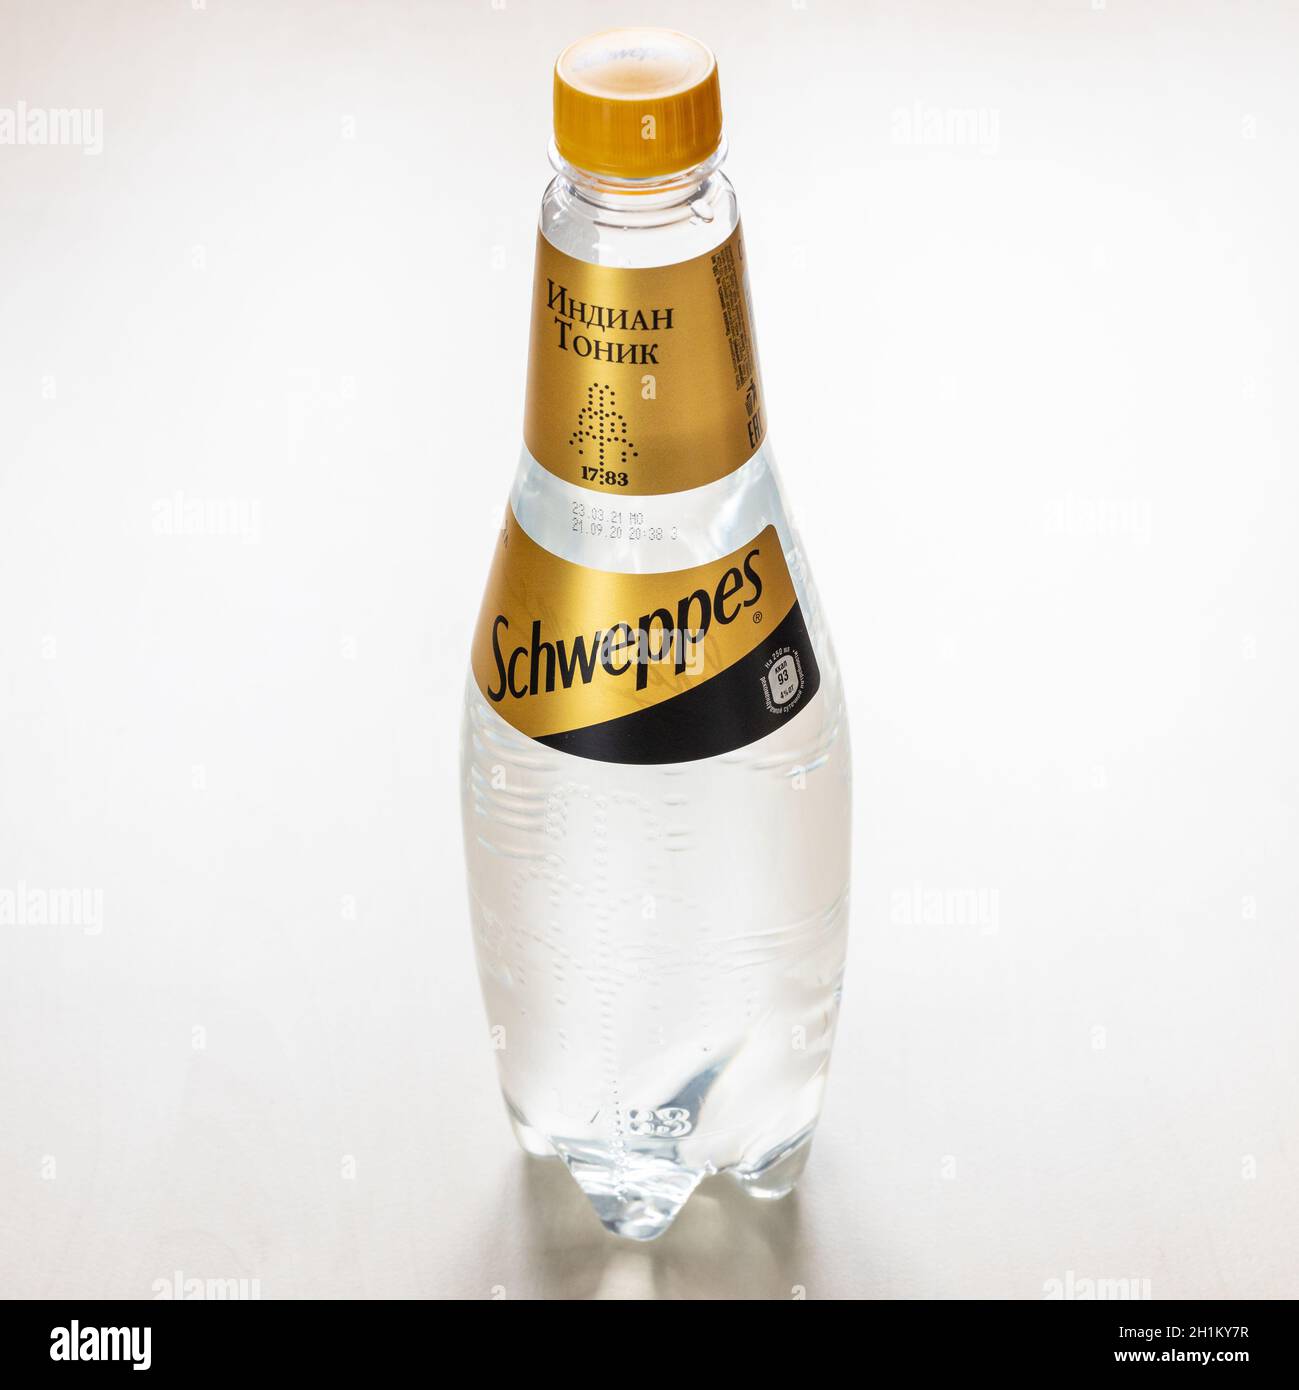 MOSCA, RUSSIA - 4 NOVEMBRE 2020: Bottiglia di plastica russa di acqua tonica indiana Schweppes su tavola marrone chiaro. Schweppes è il primo al mondo Foto Stock